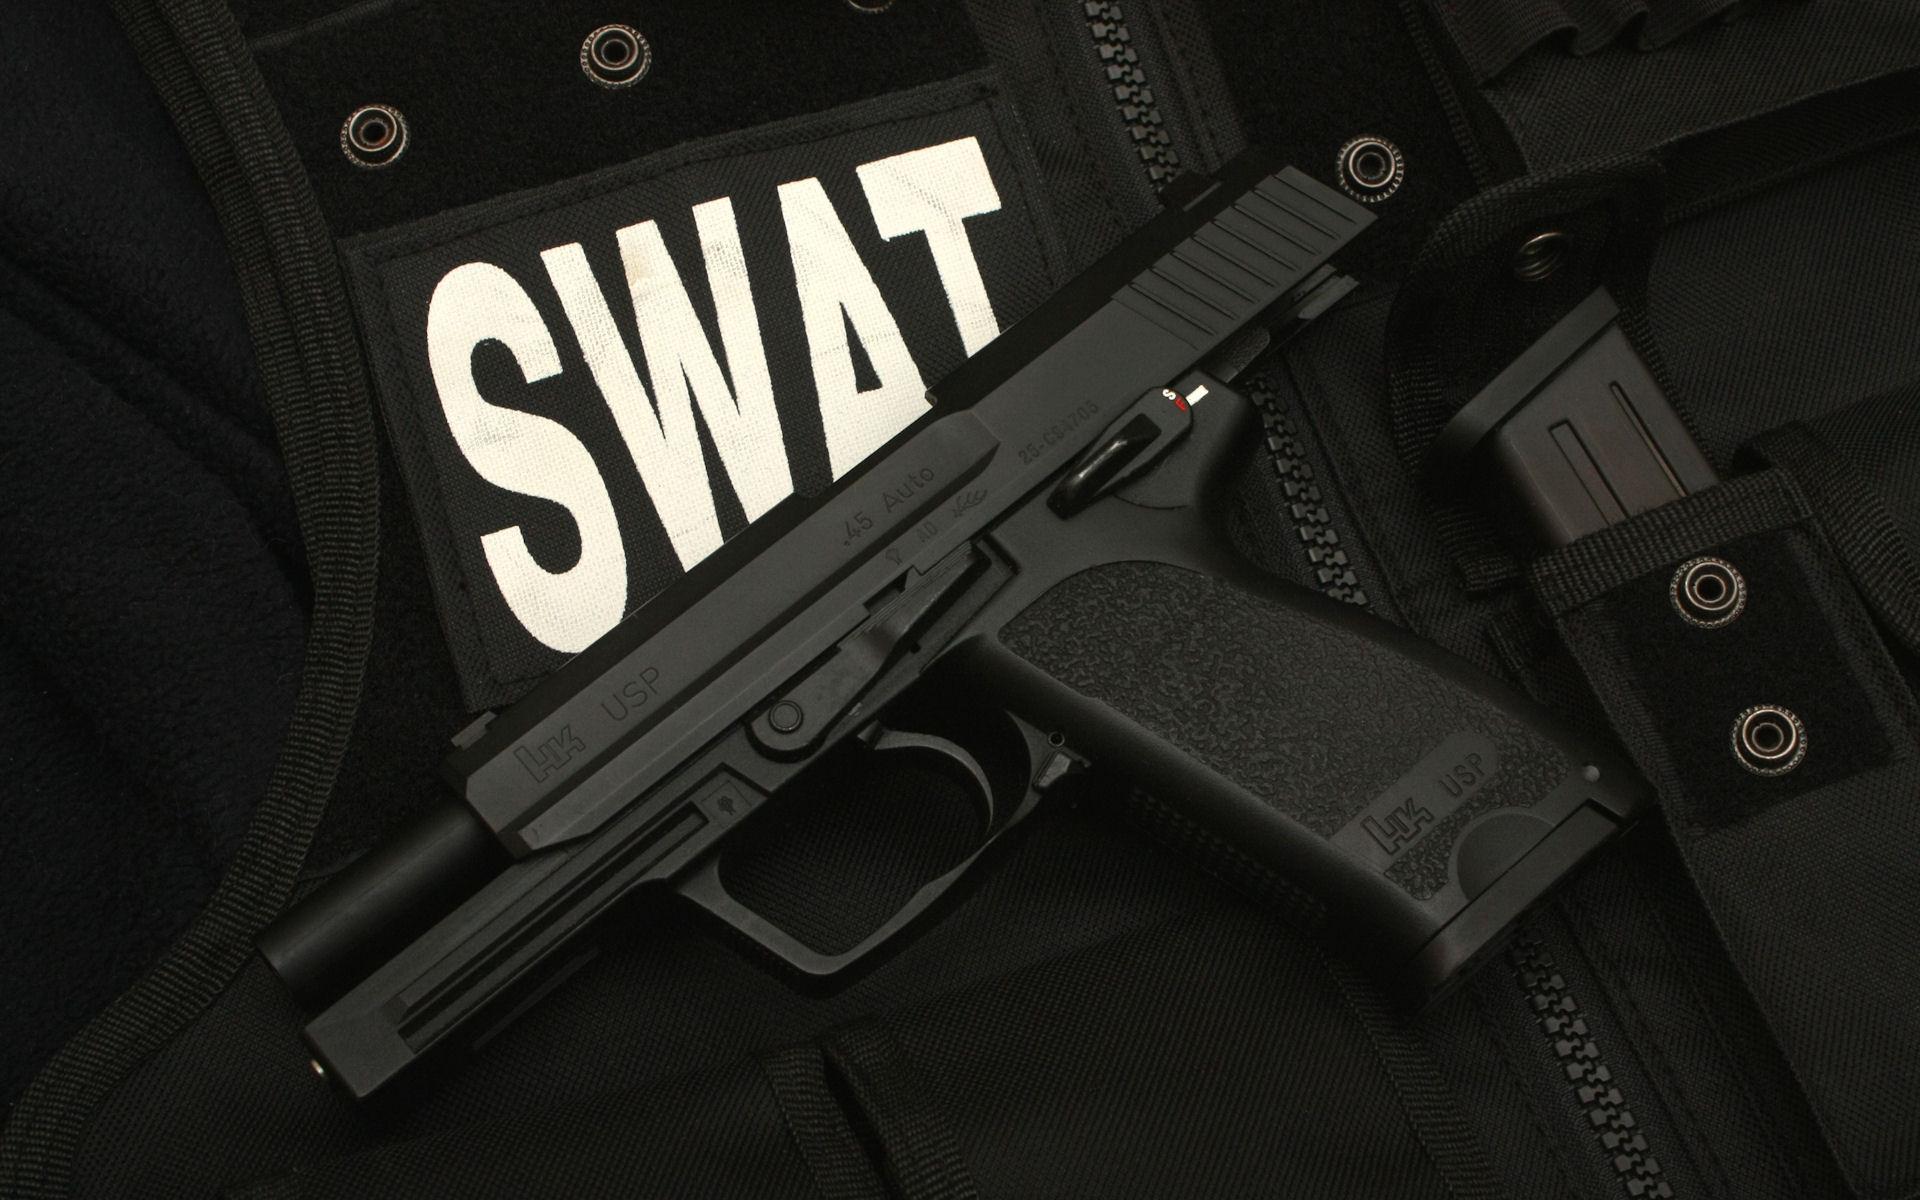 Swat pistol on vest HD wallpaper. HD Latest Wallpaper